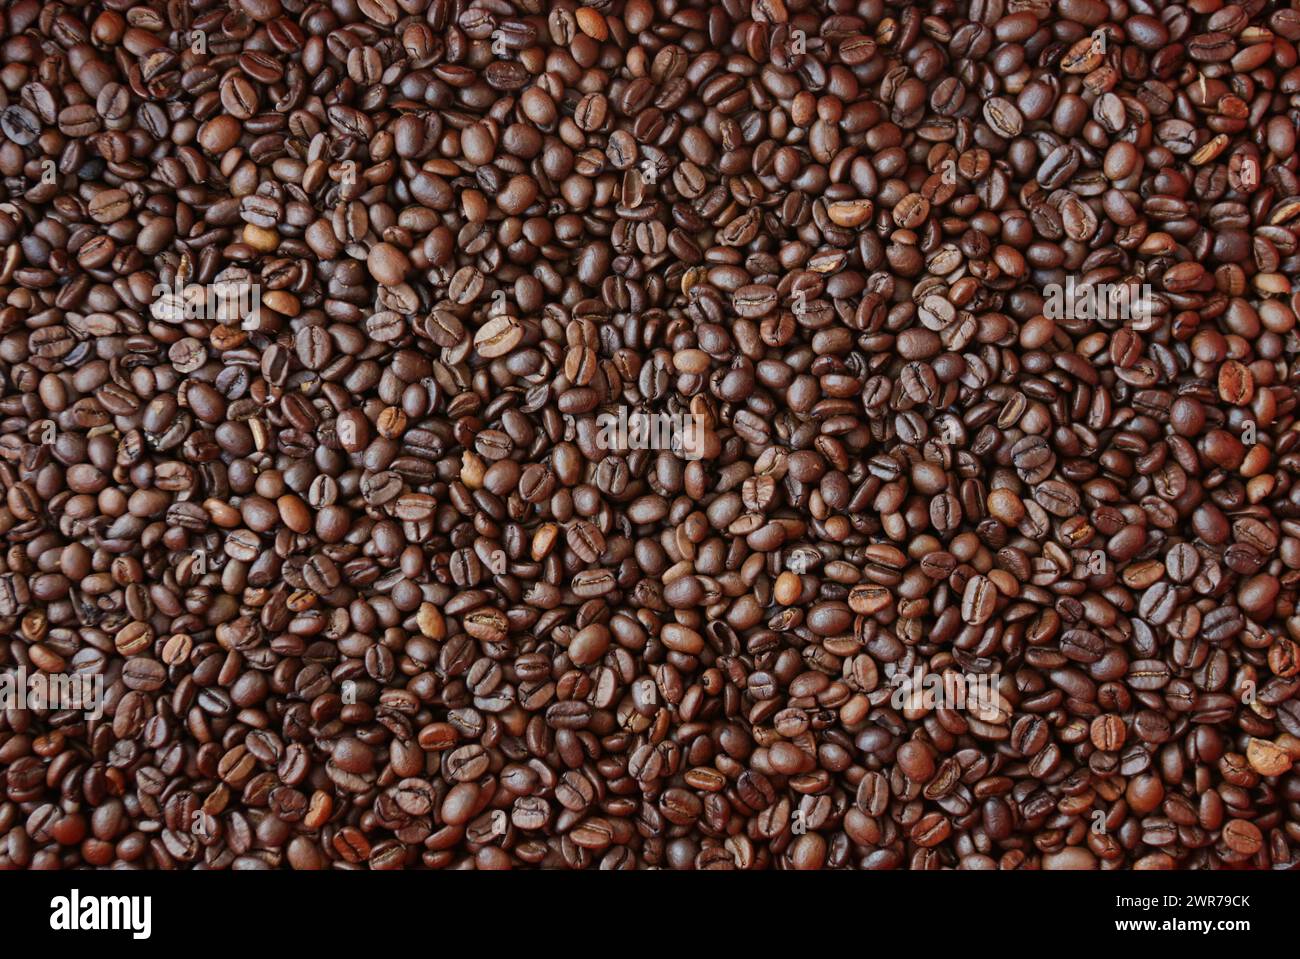 Symbolbild zum Thema Kaffee Hier: Haufen Kaffeebohnen *** immagine simbolica sul tema del caffè qui una pila di chicchi di caffè Foto Stock